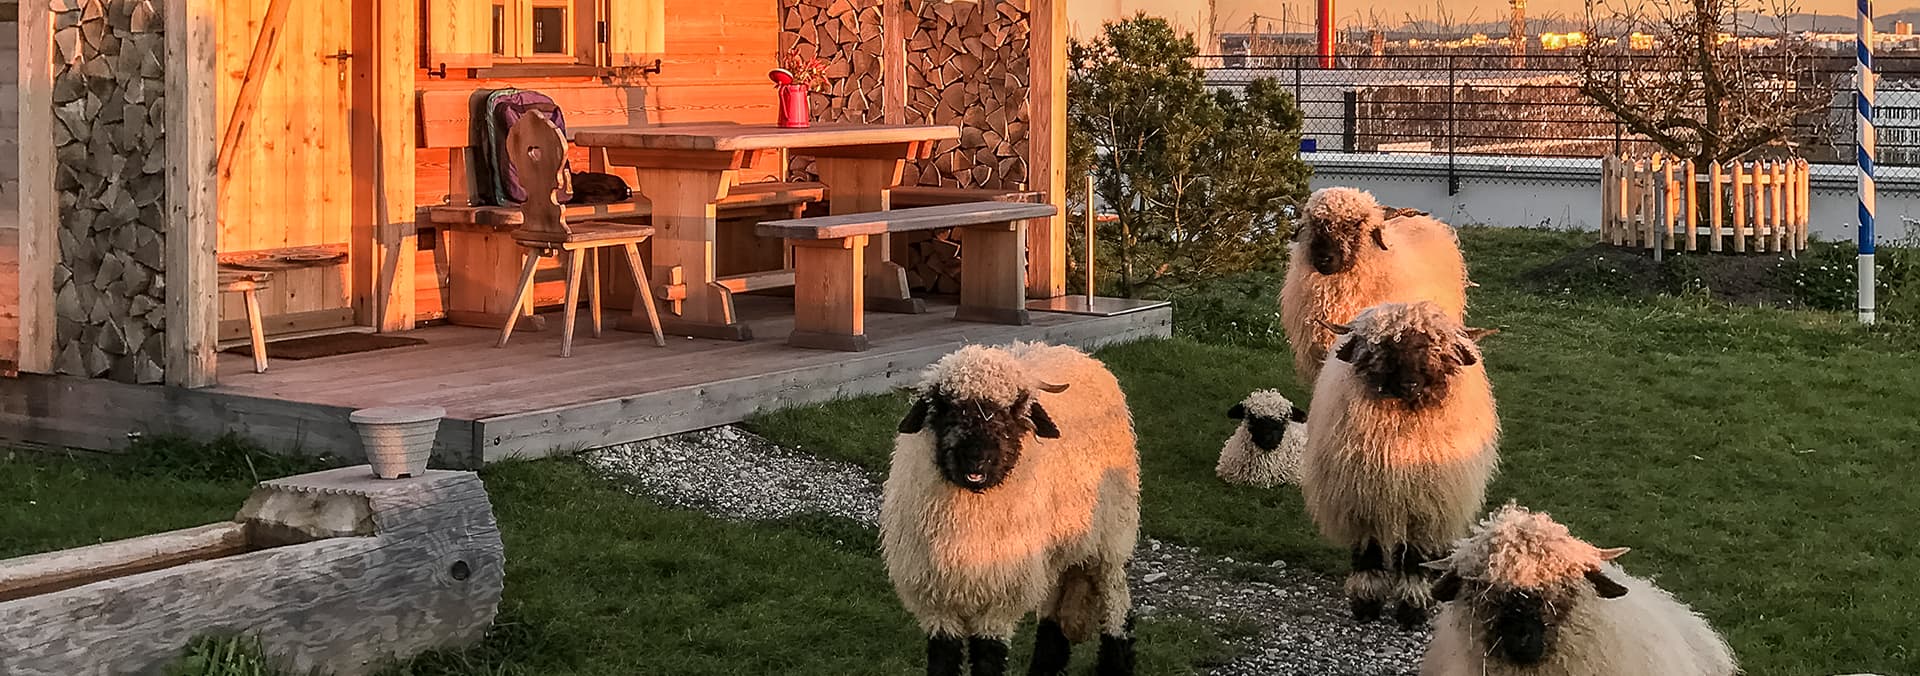 Schafe im Grünen